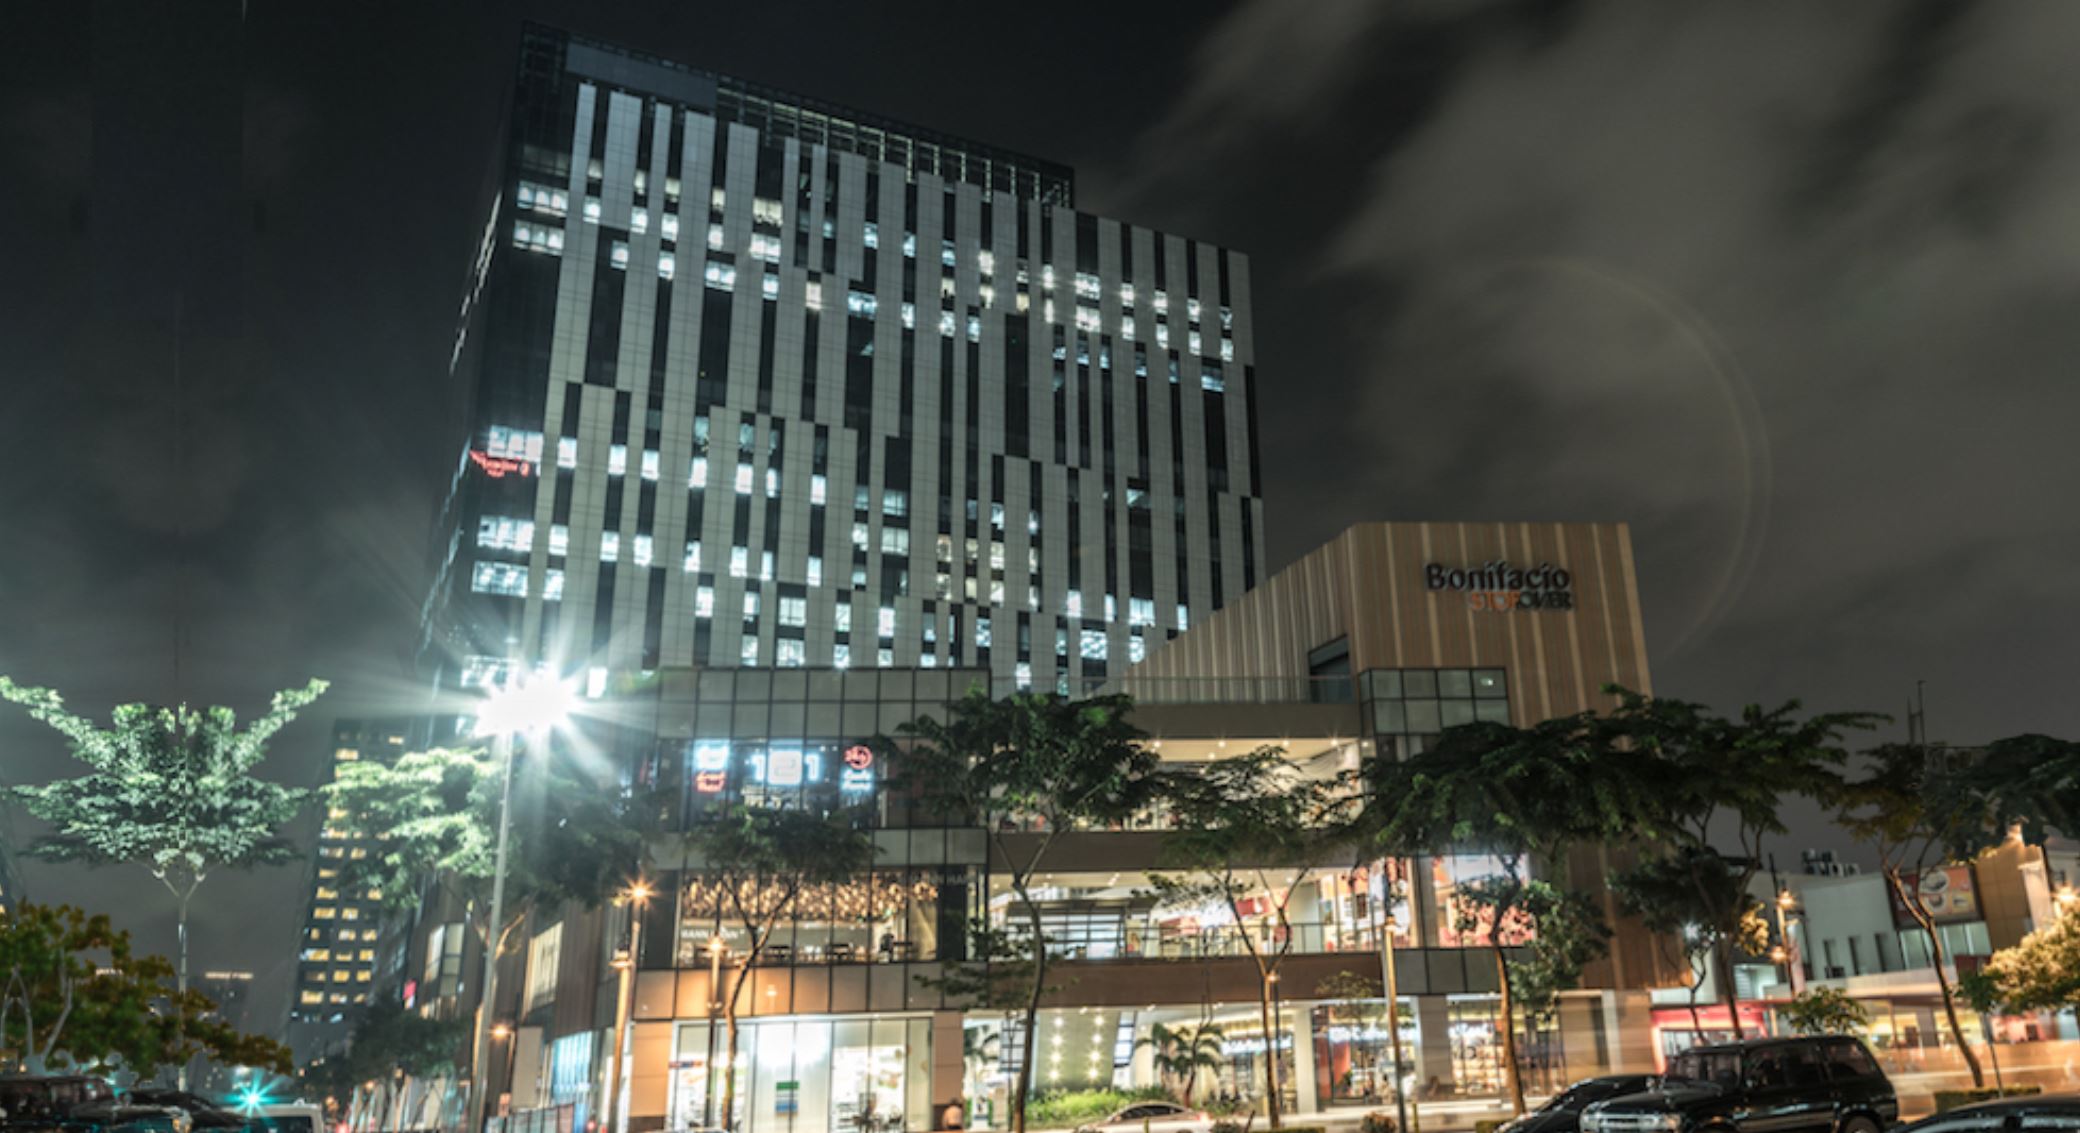 Bonifacio Stopover Corporate Center